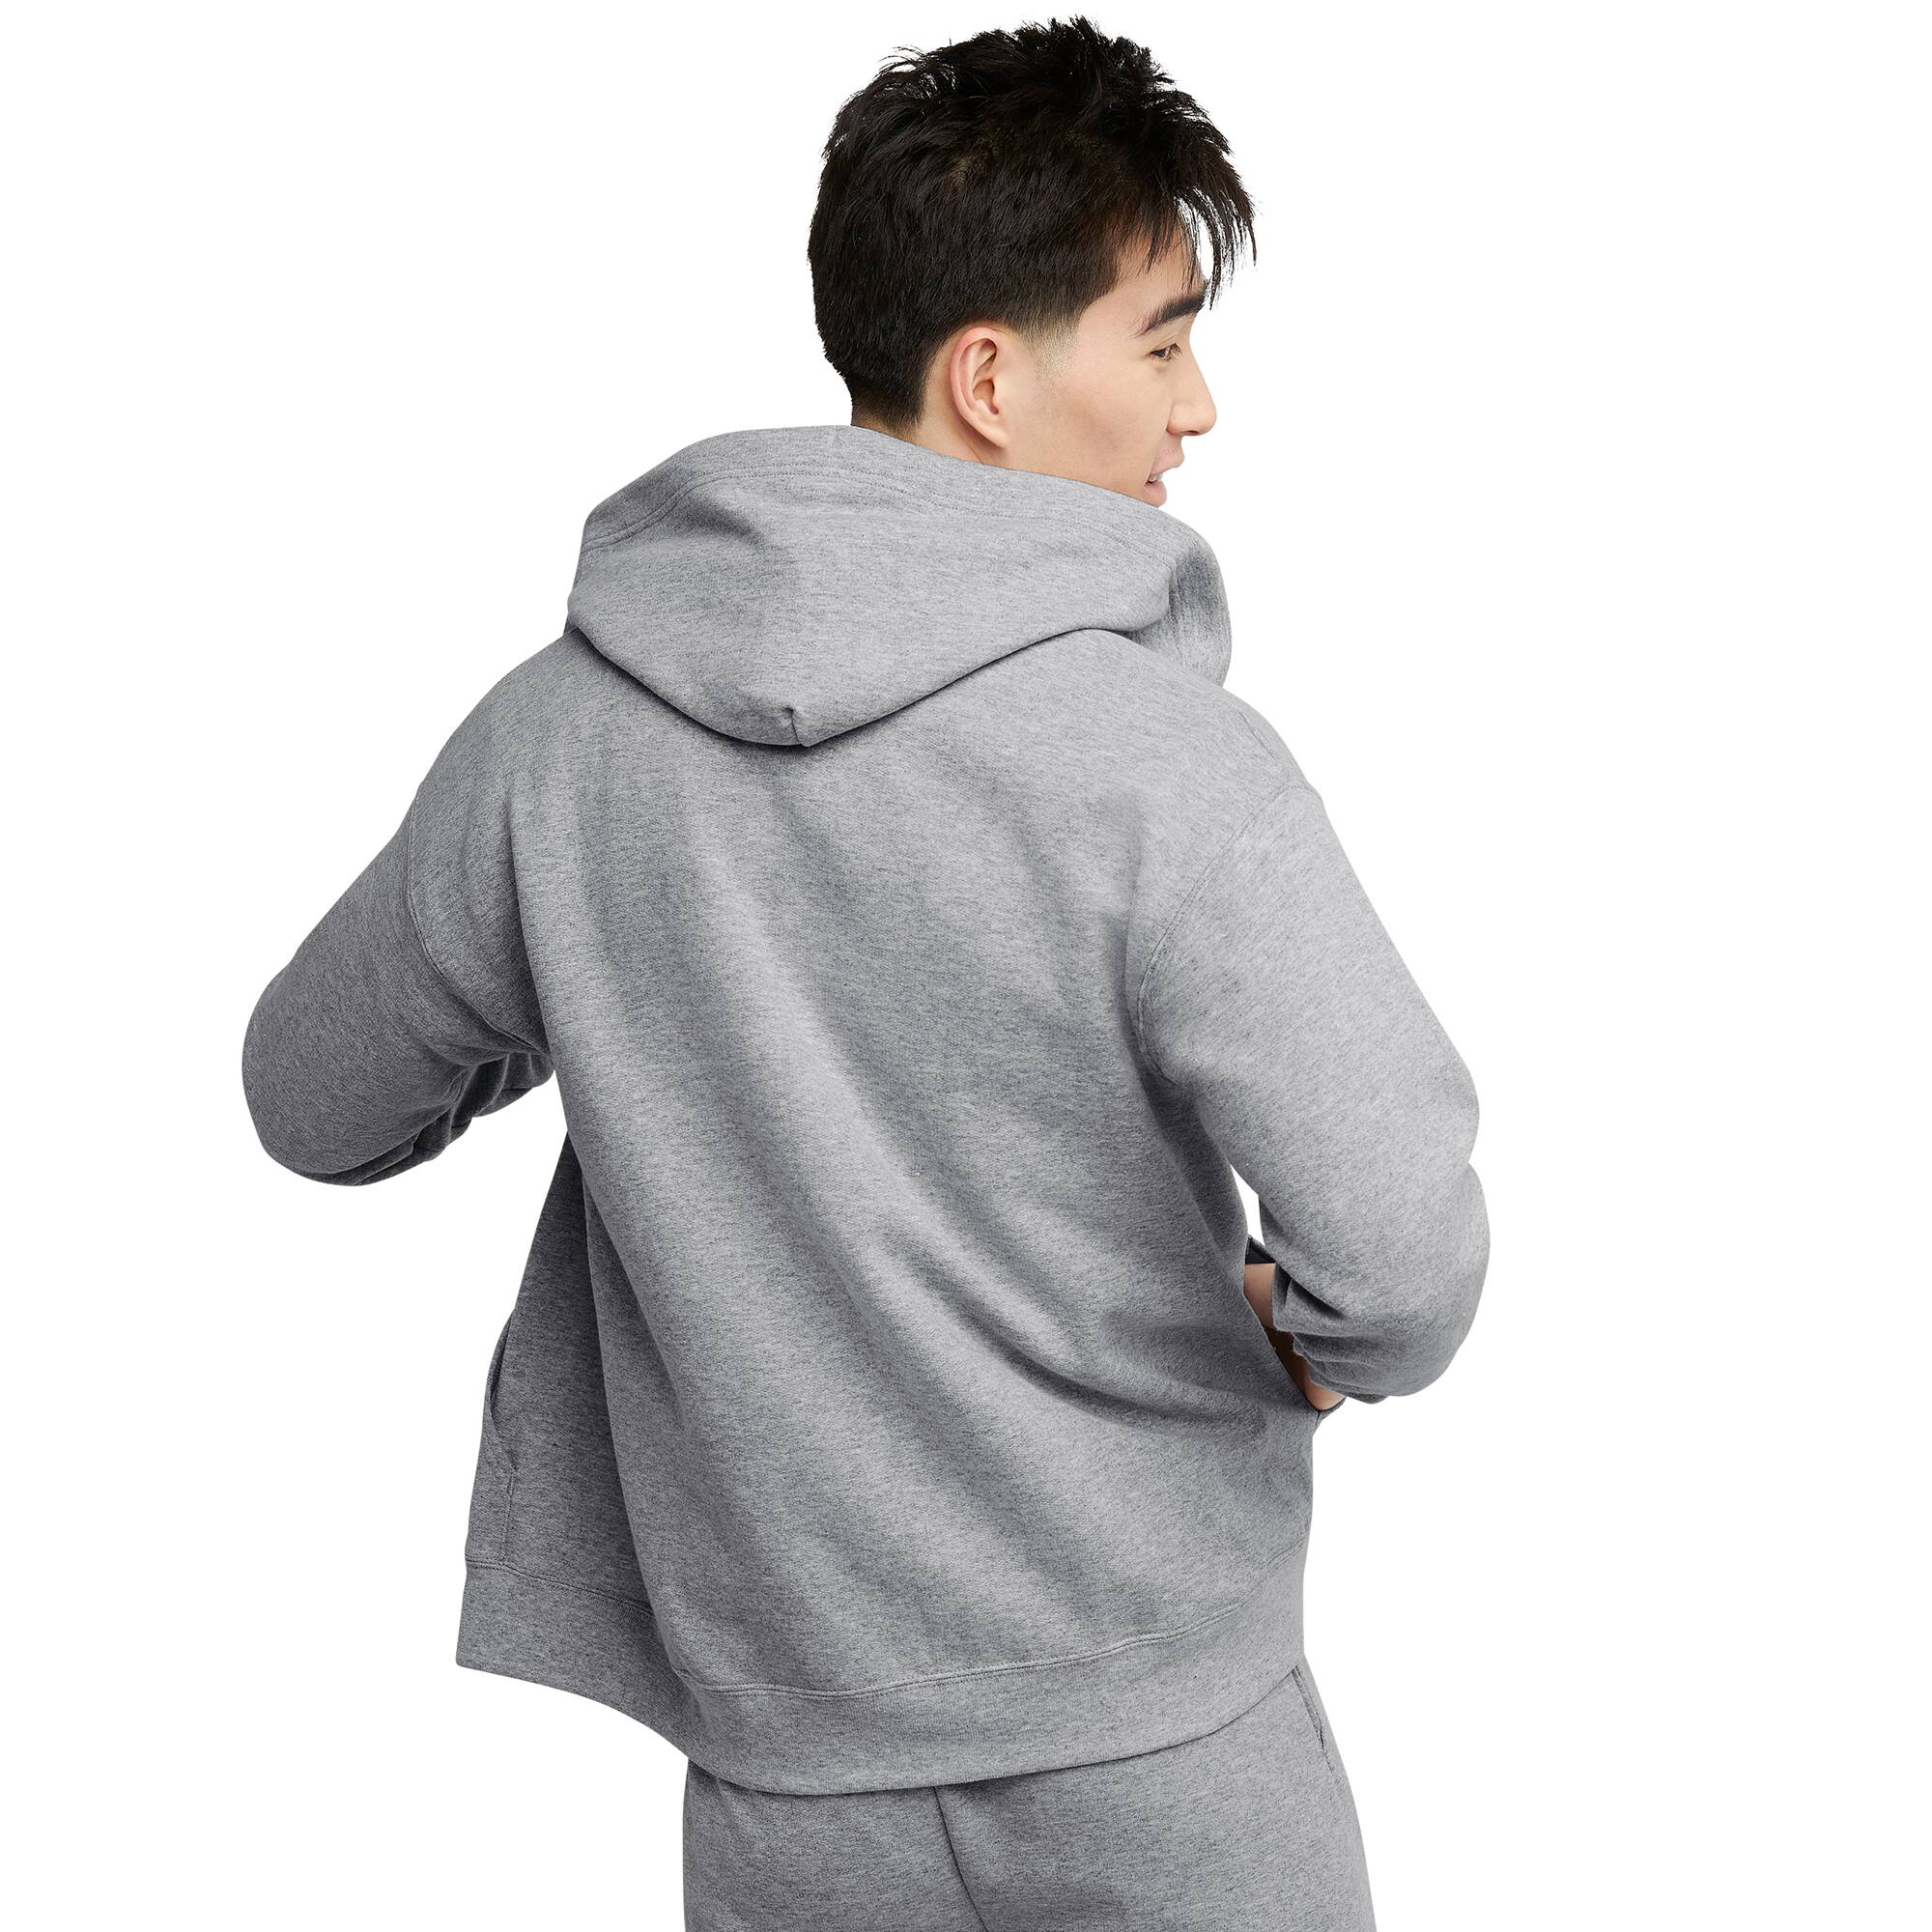 Hanes EcoSmart Fleece Full-Zip Men's Hoodie